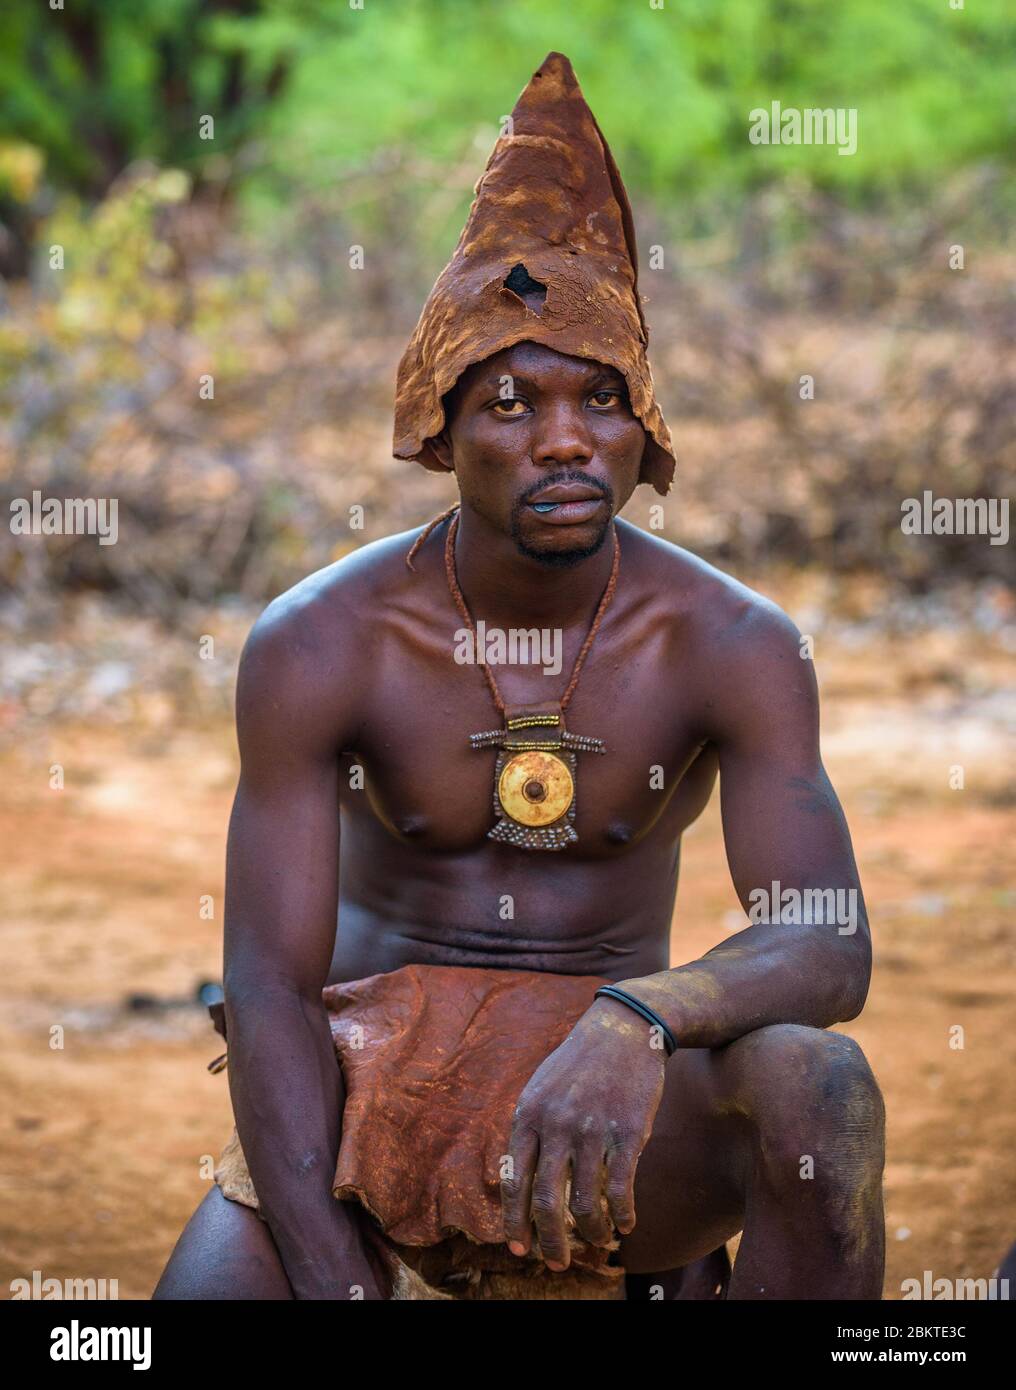 Membre de la tribu africaine Himba, habillé traditionnellement à Opuwo, Namibie Banque D'Images